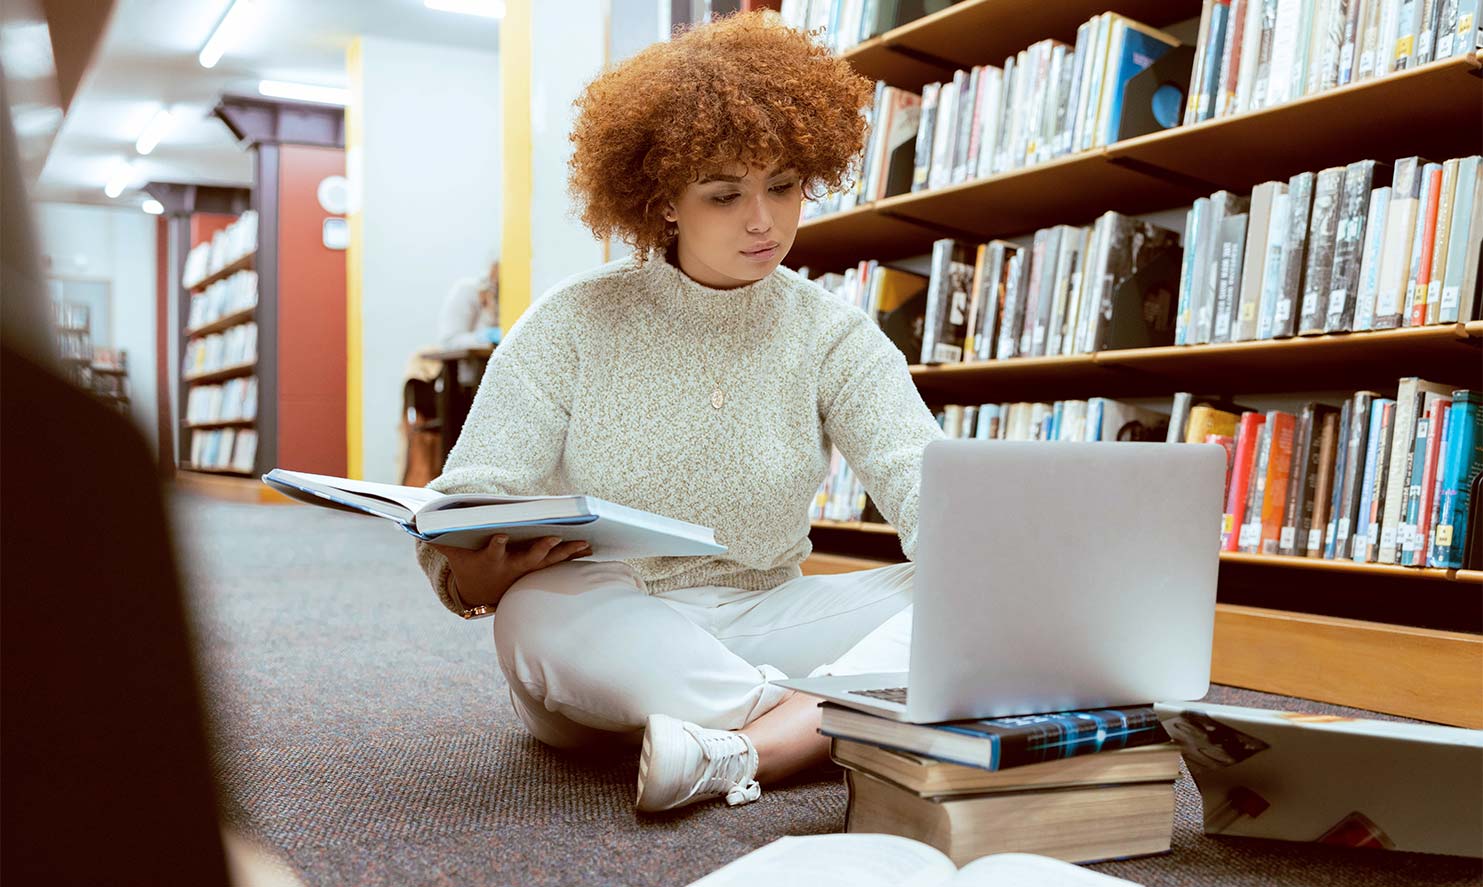 Eine junge Frau mit lockigen Haaren sitzt in einer Bibliothek auf dem Boden während sie ihren Laptop aufgeklappt auf einem Stapel Bücher hat.